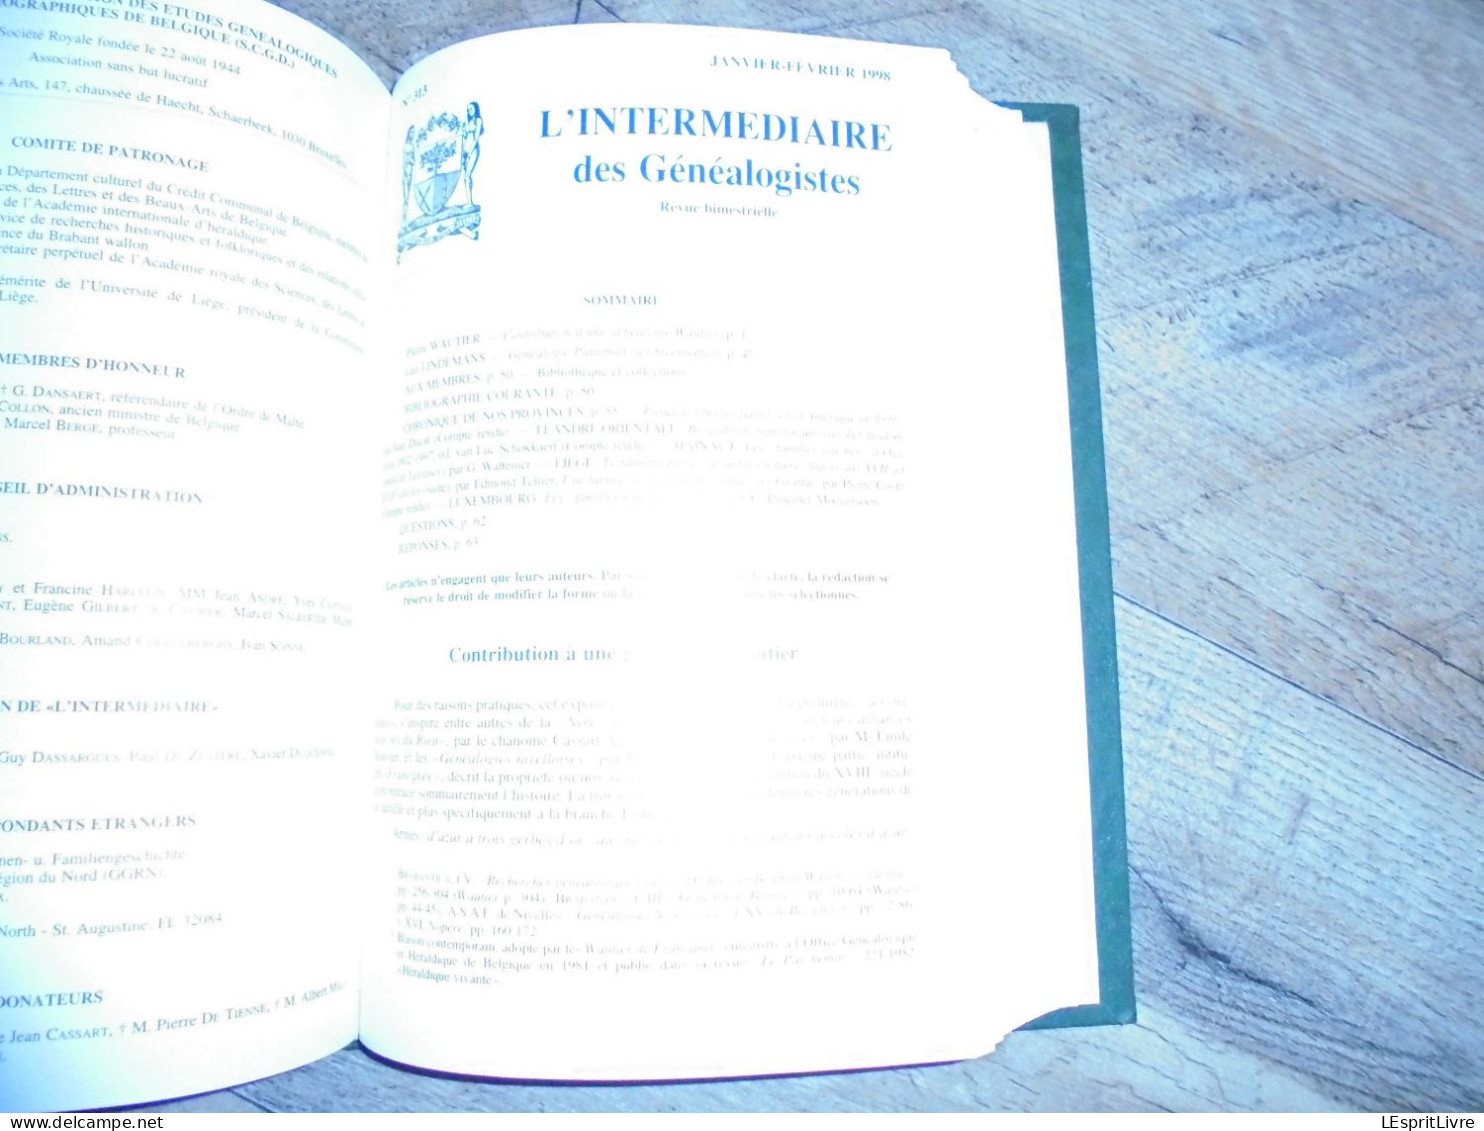 L' INTERMEDIAIRE DES GENEALOGISTES Reliure 1995 1996 Généalogie Régionalisme Héraldique Boeye Struelens Famille Souche